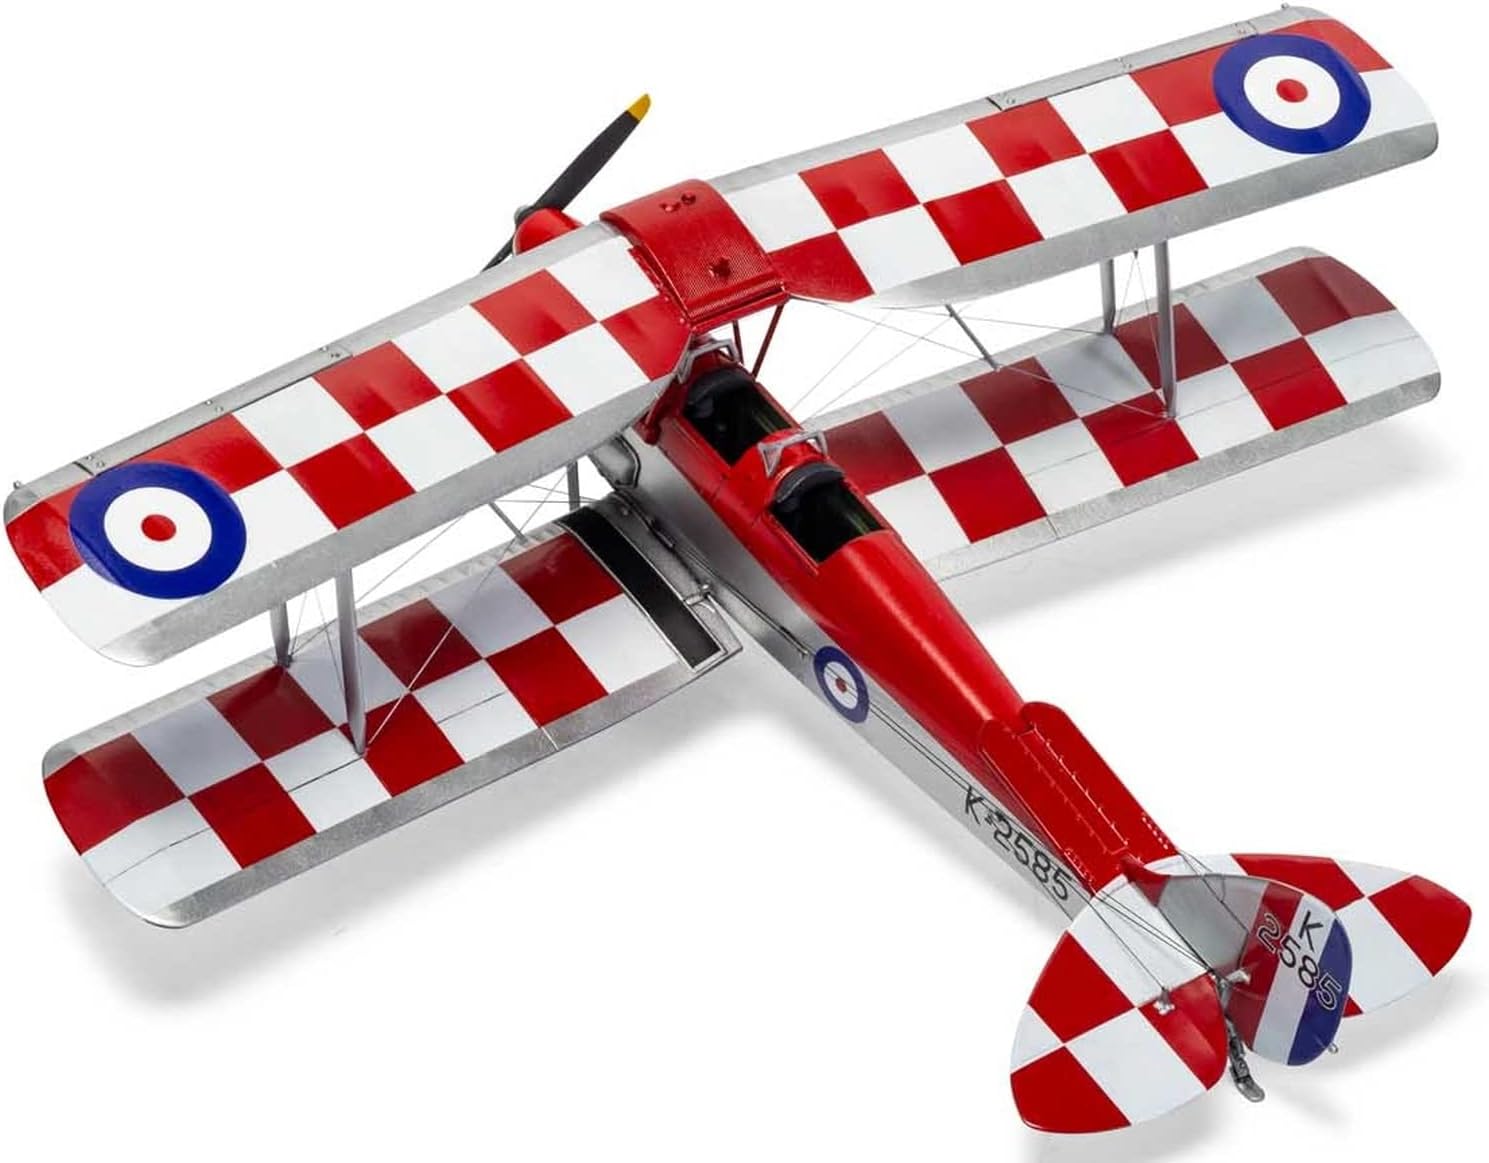 Airfix A04104 1:48 Scale De Havilland Tiger North Aircraft Model Kit